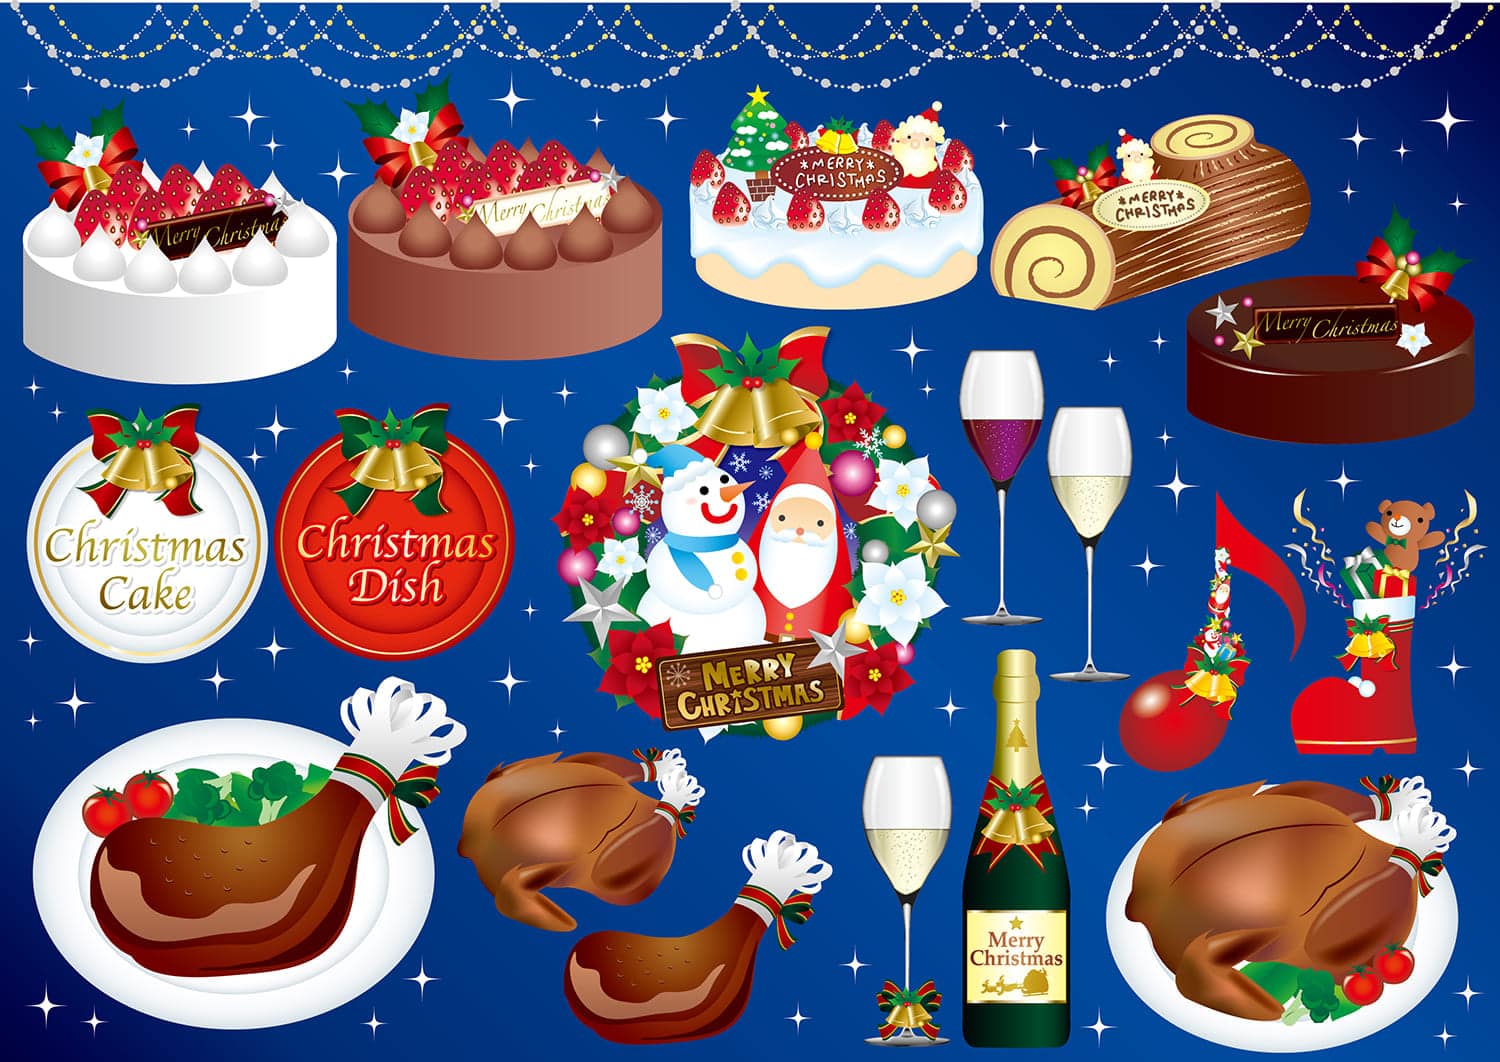 18ケーキ屋さんのクリスマスケーキ予約方法 特典まとめ シャトレーゼ 不二家 コージーコーナー コンビニとファミレスのスイーツのおすすめを紹介するブログ